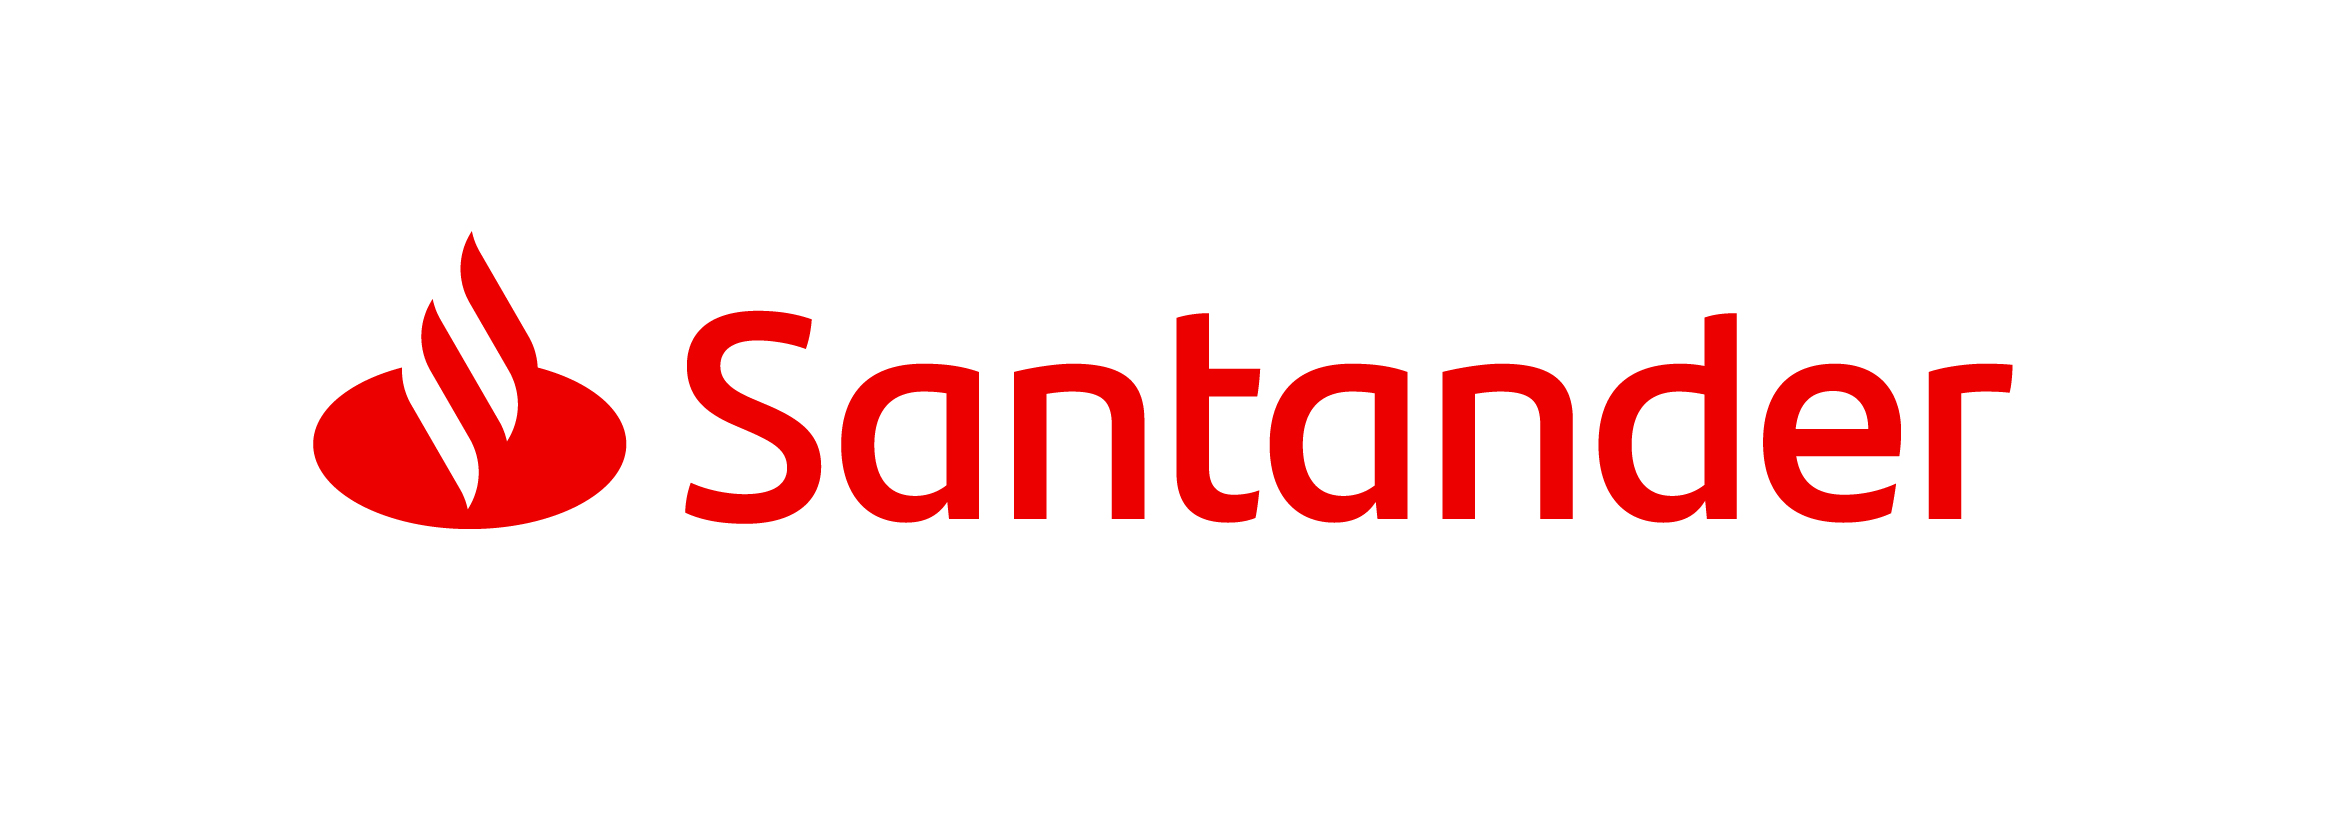 Banco Santander Totta, S.A